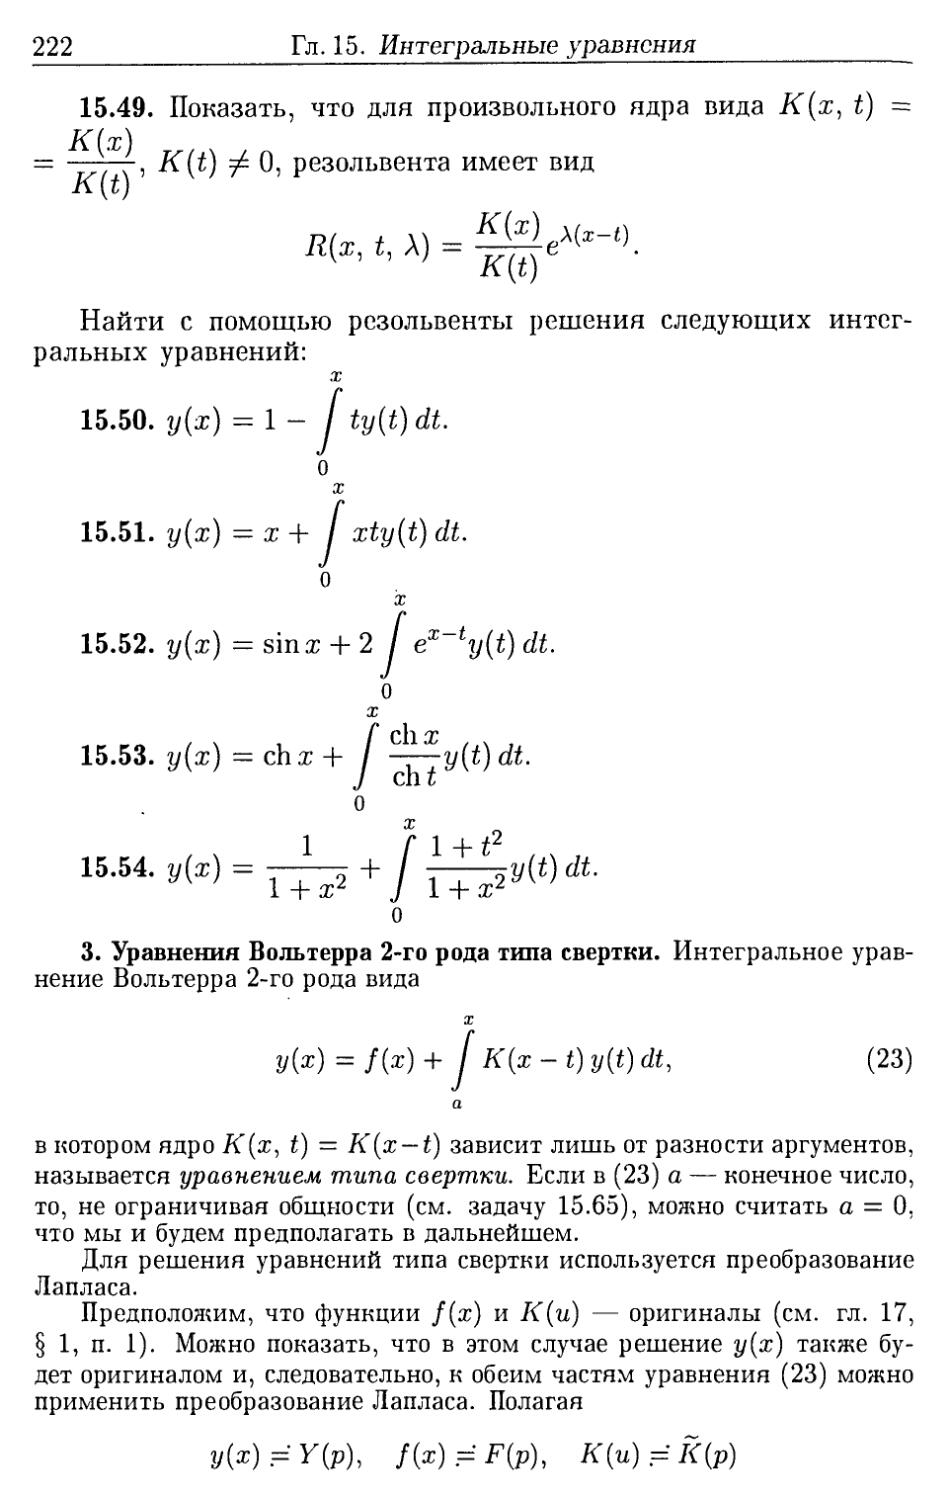 3. Уравнения Вольтерра 2-го рода типа свертки